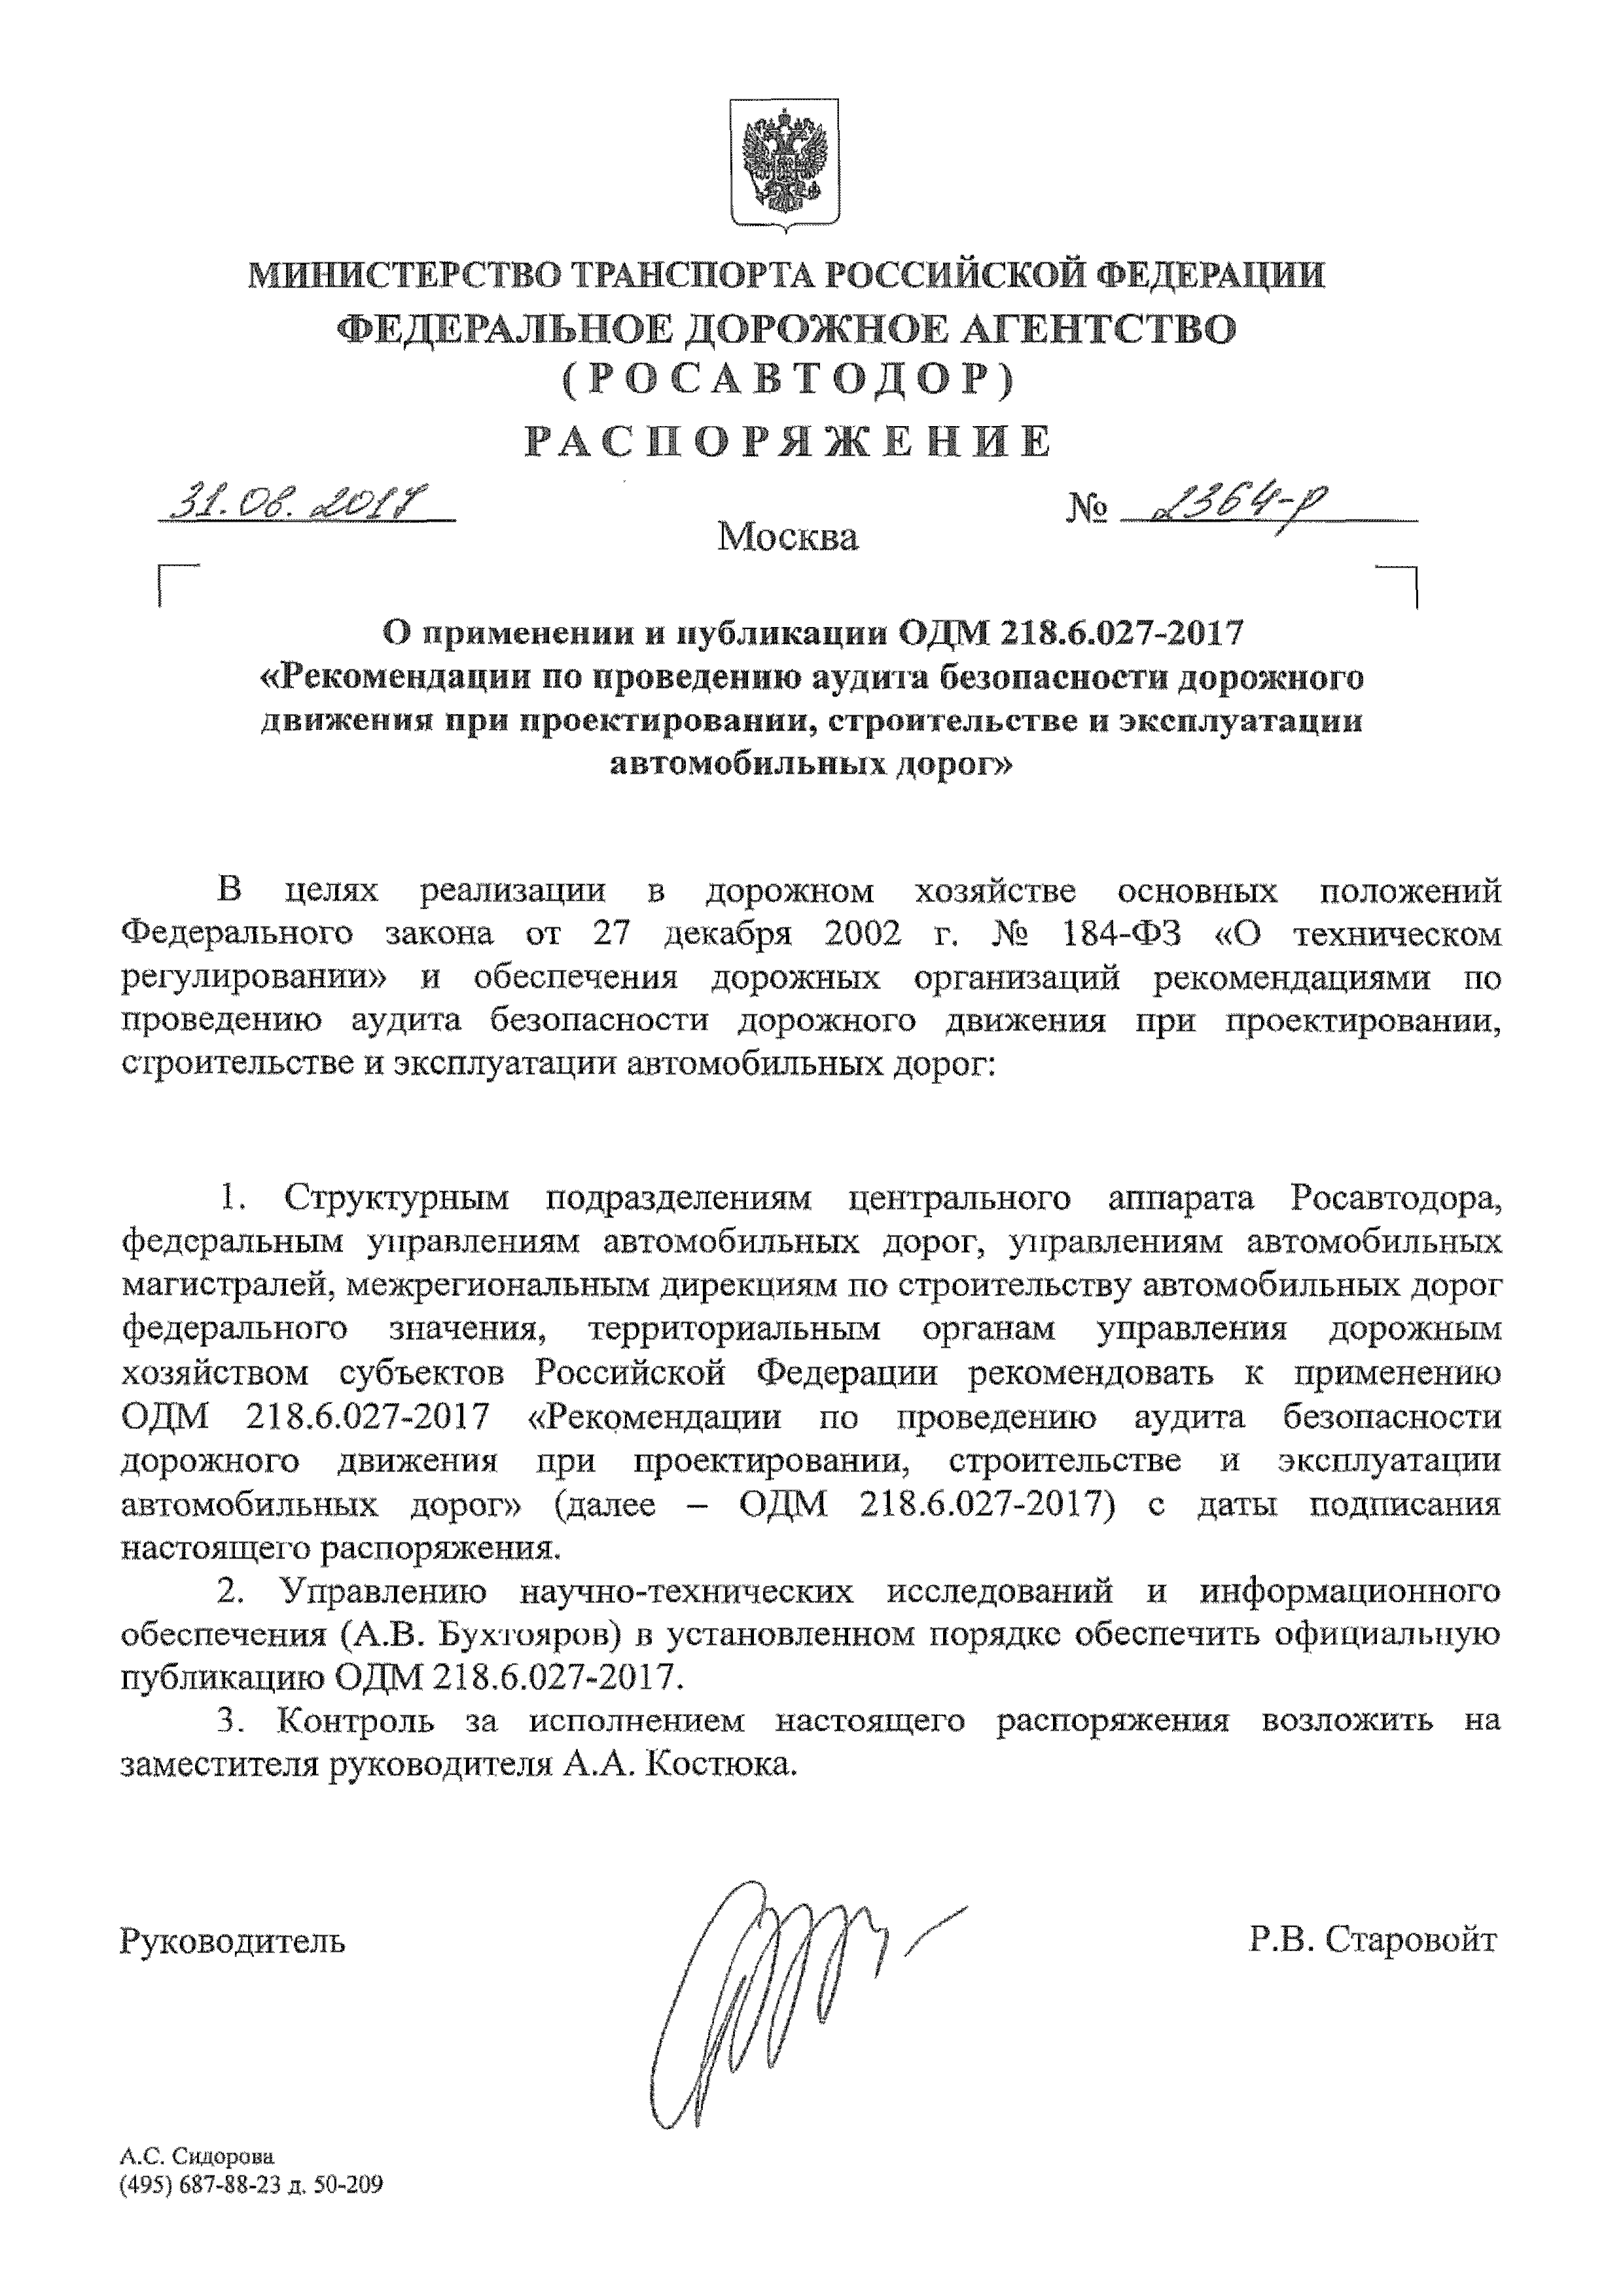 ОДМ 218.6.027-2017